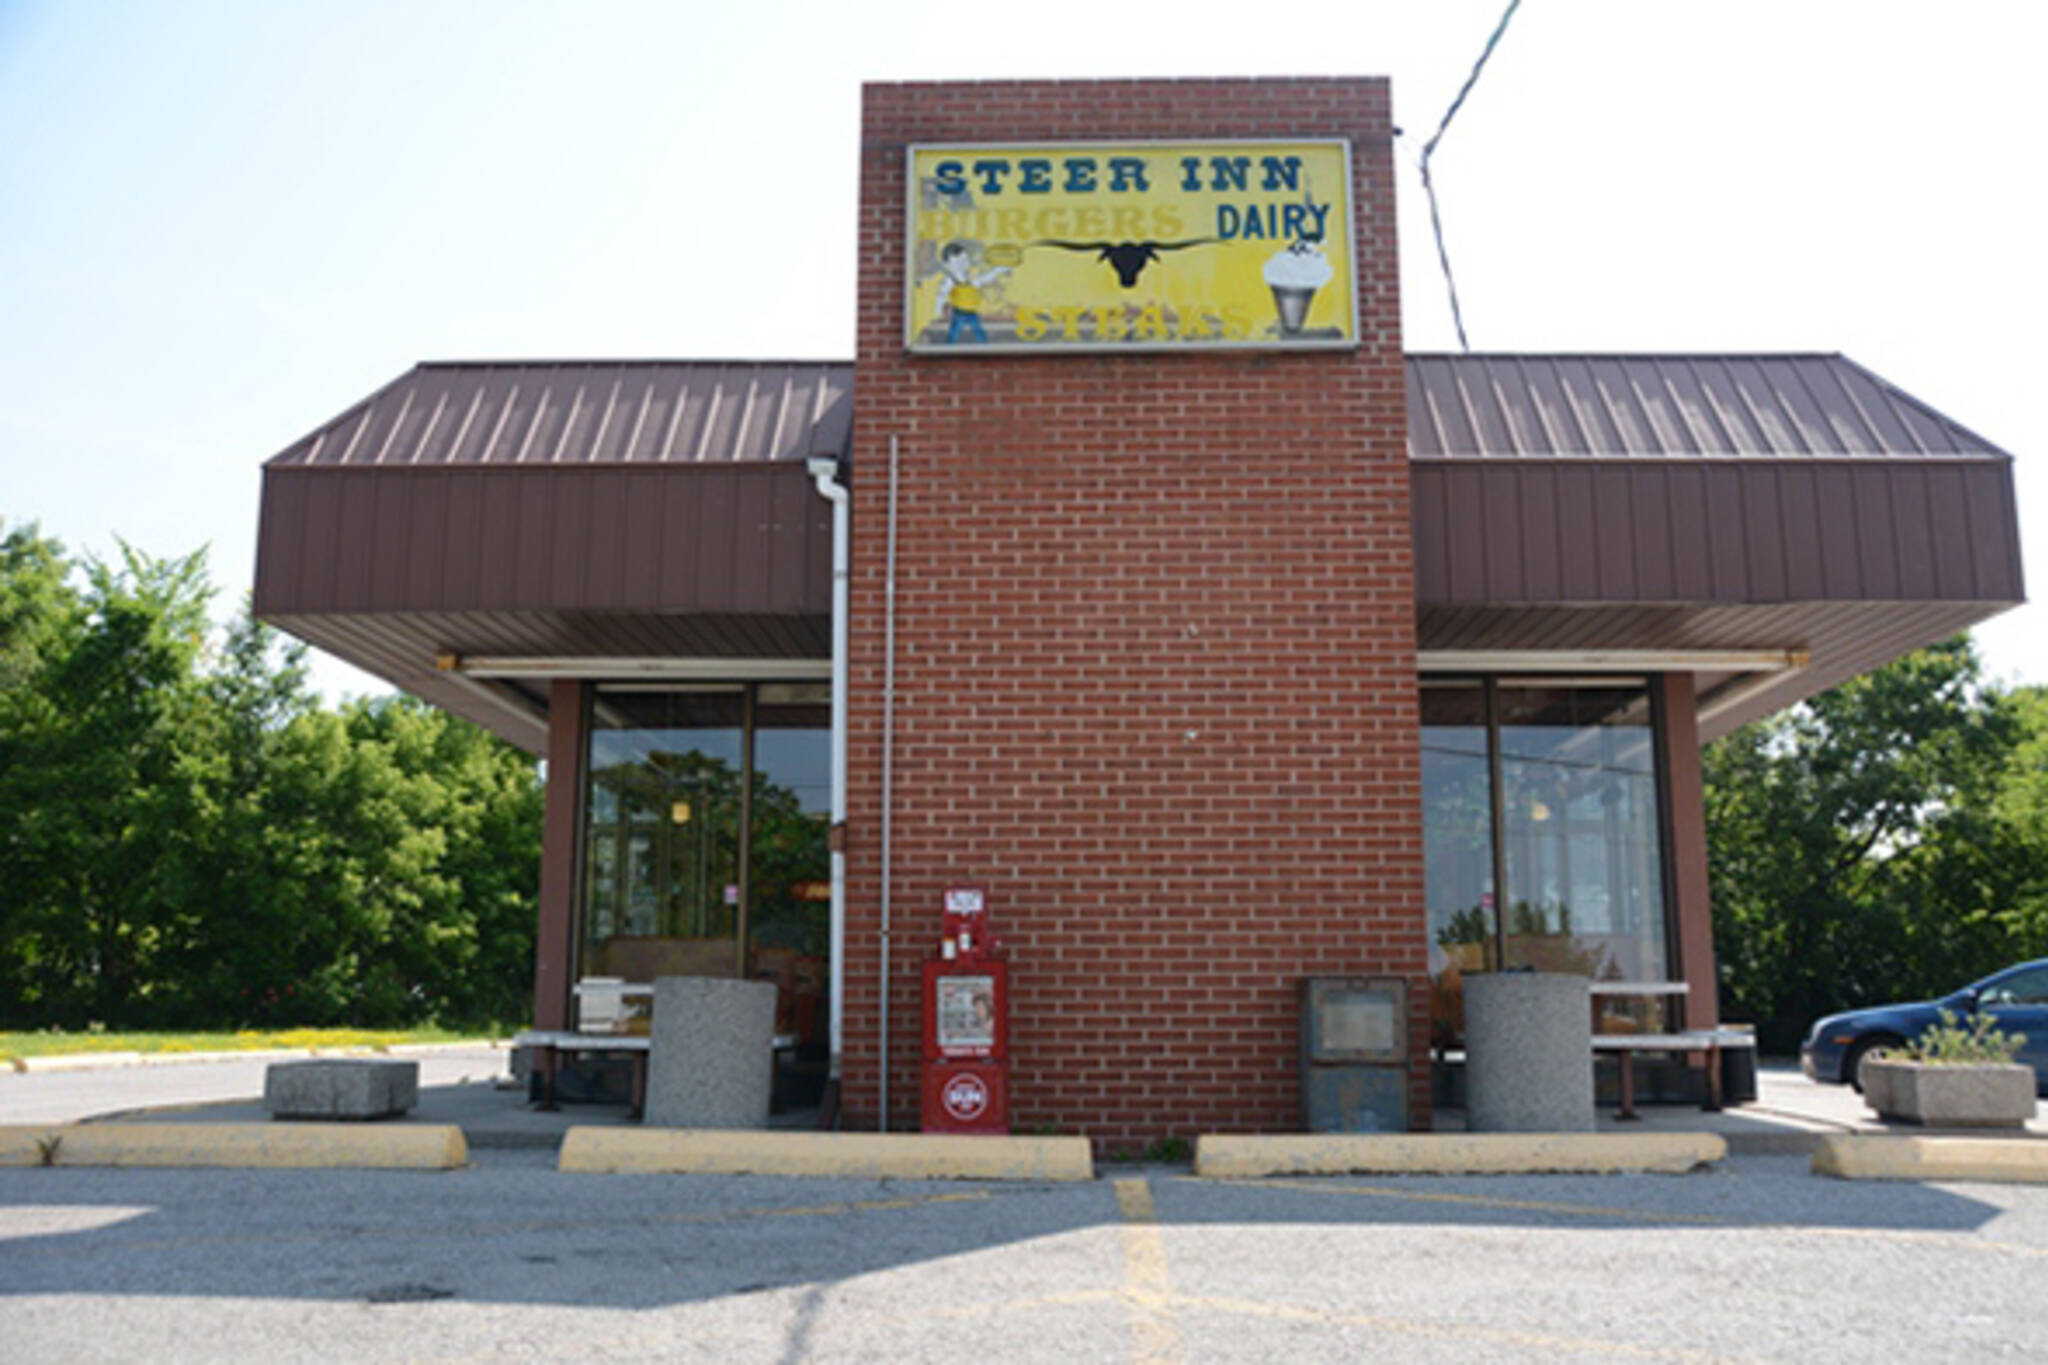 Steer Inn Burgers